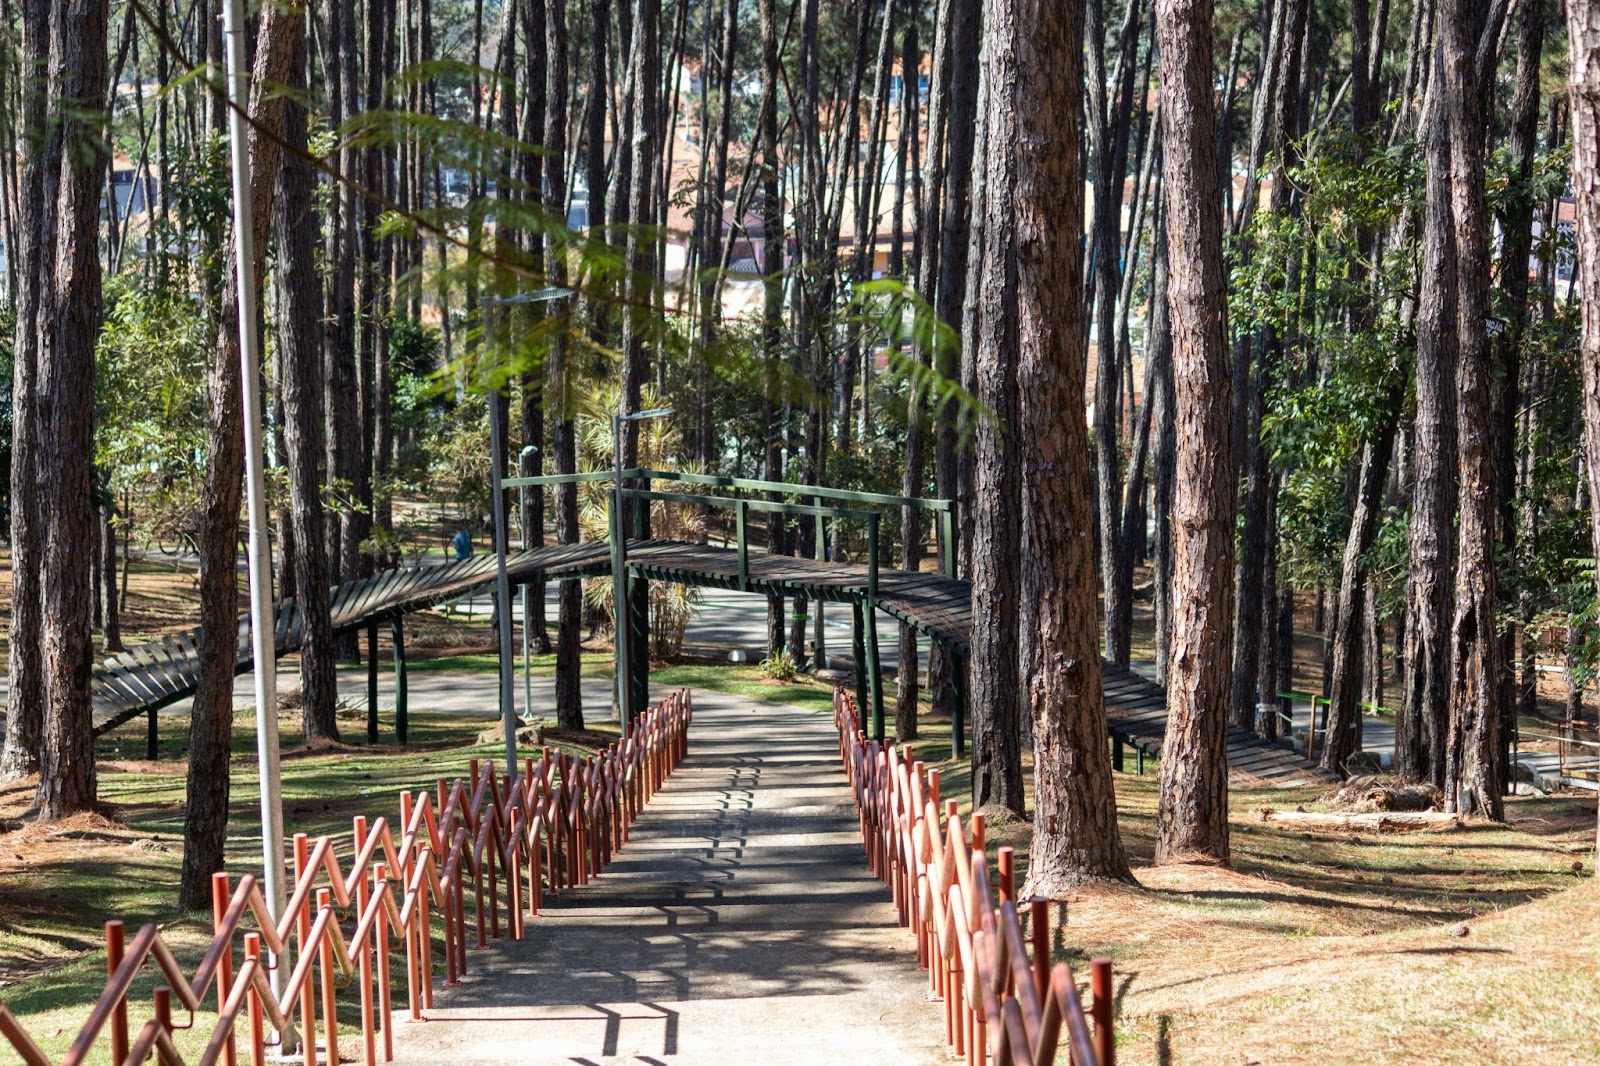 Pista de mountain bike em meio às árvores do Parque Alberto Simões, com ponte de madeira atravessando a imagem e uma pista em declínio centralizada.